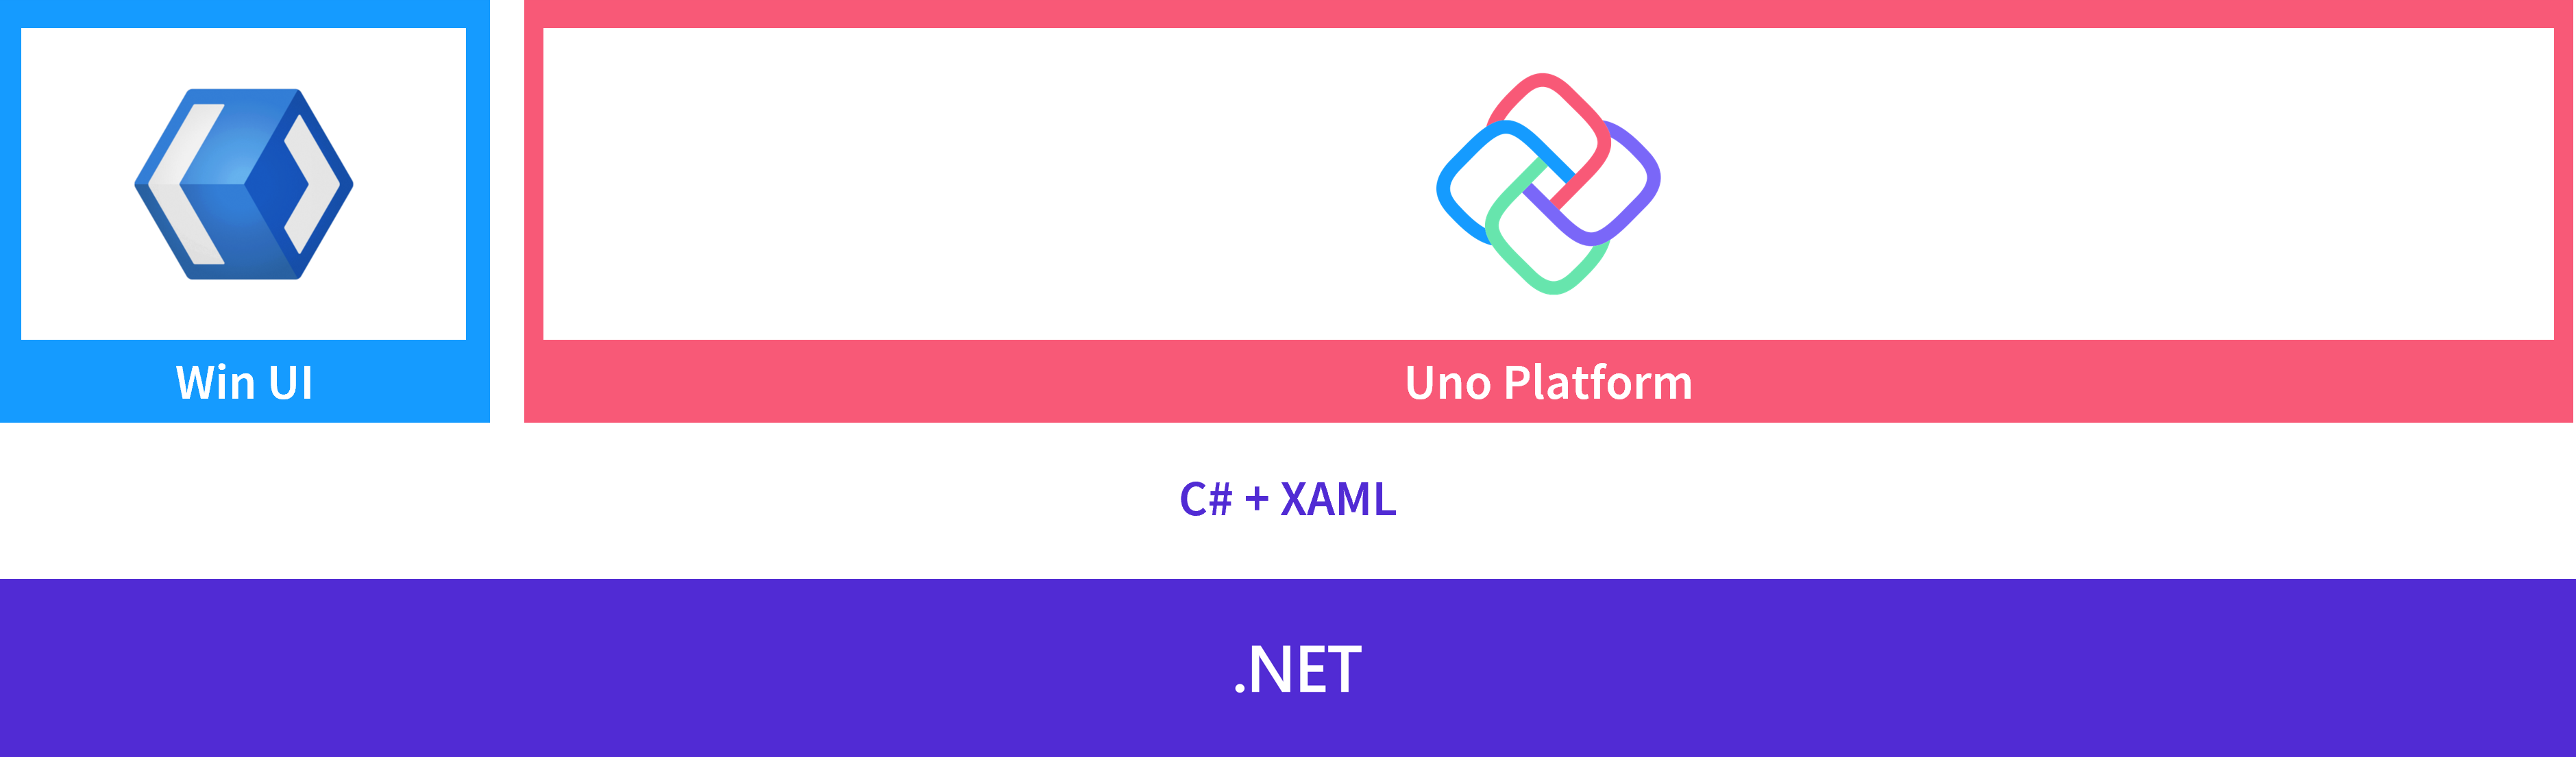 Uno Platform - Architecture